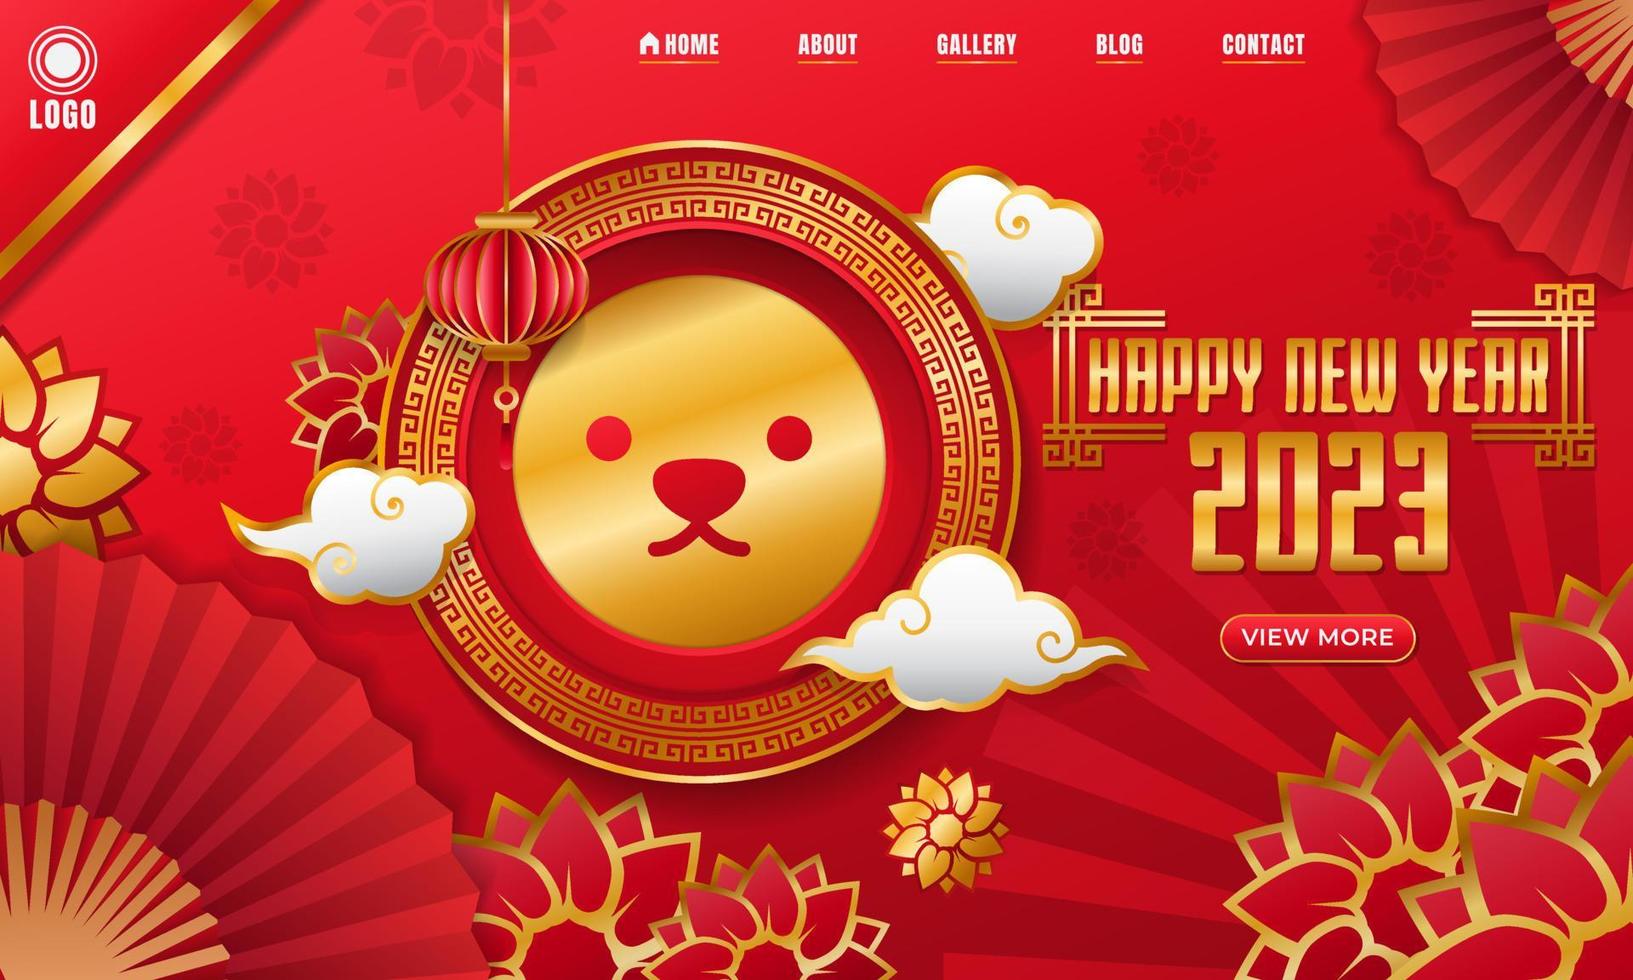 fundo da página inicial do site de celebração do ano novo chinês vetor